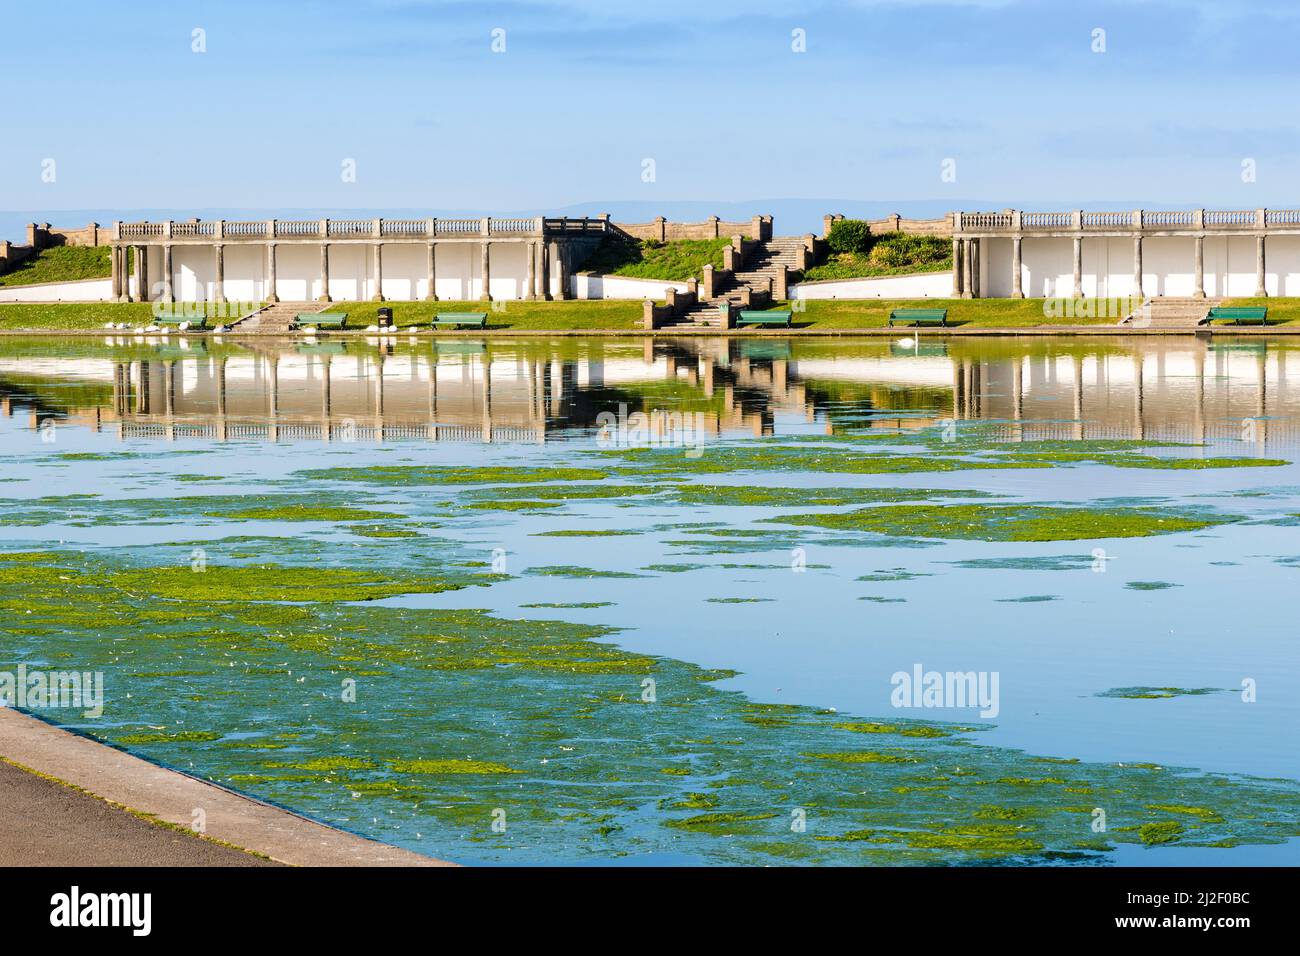 Les algues vertes épaisses ou les mauvaises herbes de l'étang couvrent de grandes zones d'un lac ornemental dans les jardins de Knap, Barry, un matin ensoleillé et lumineux. Banque D'Images